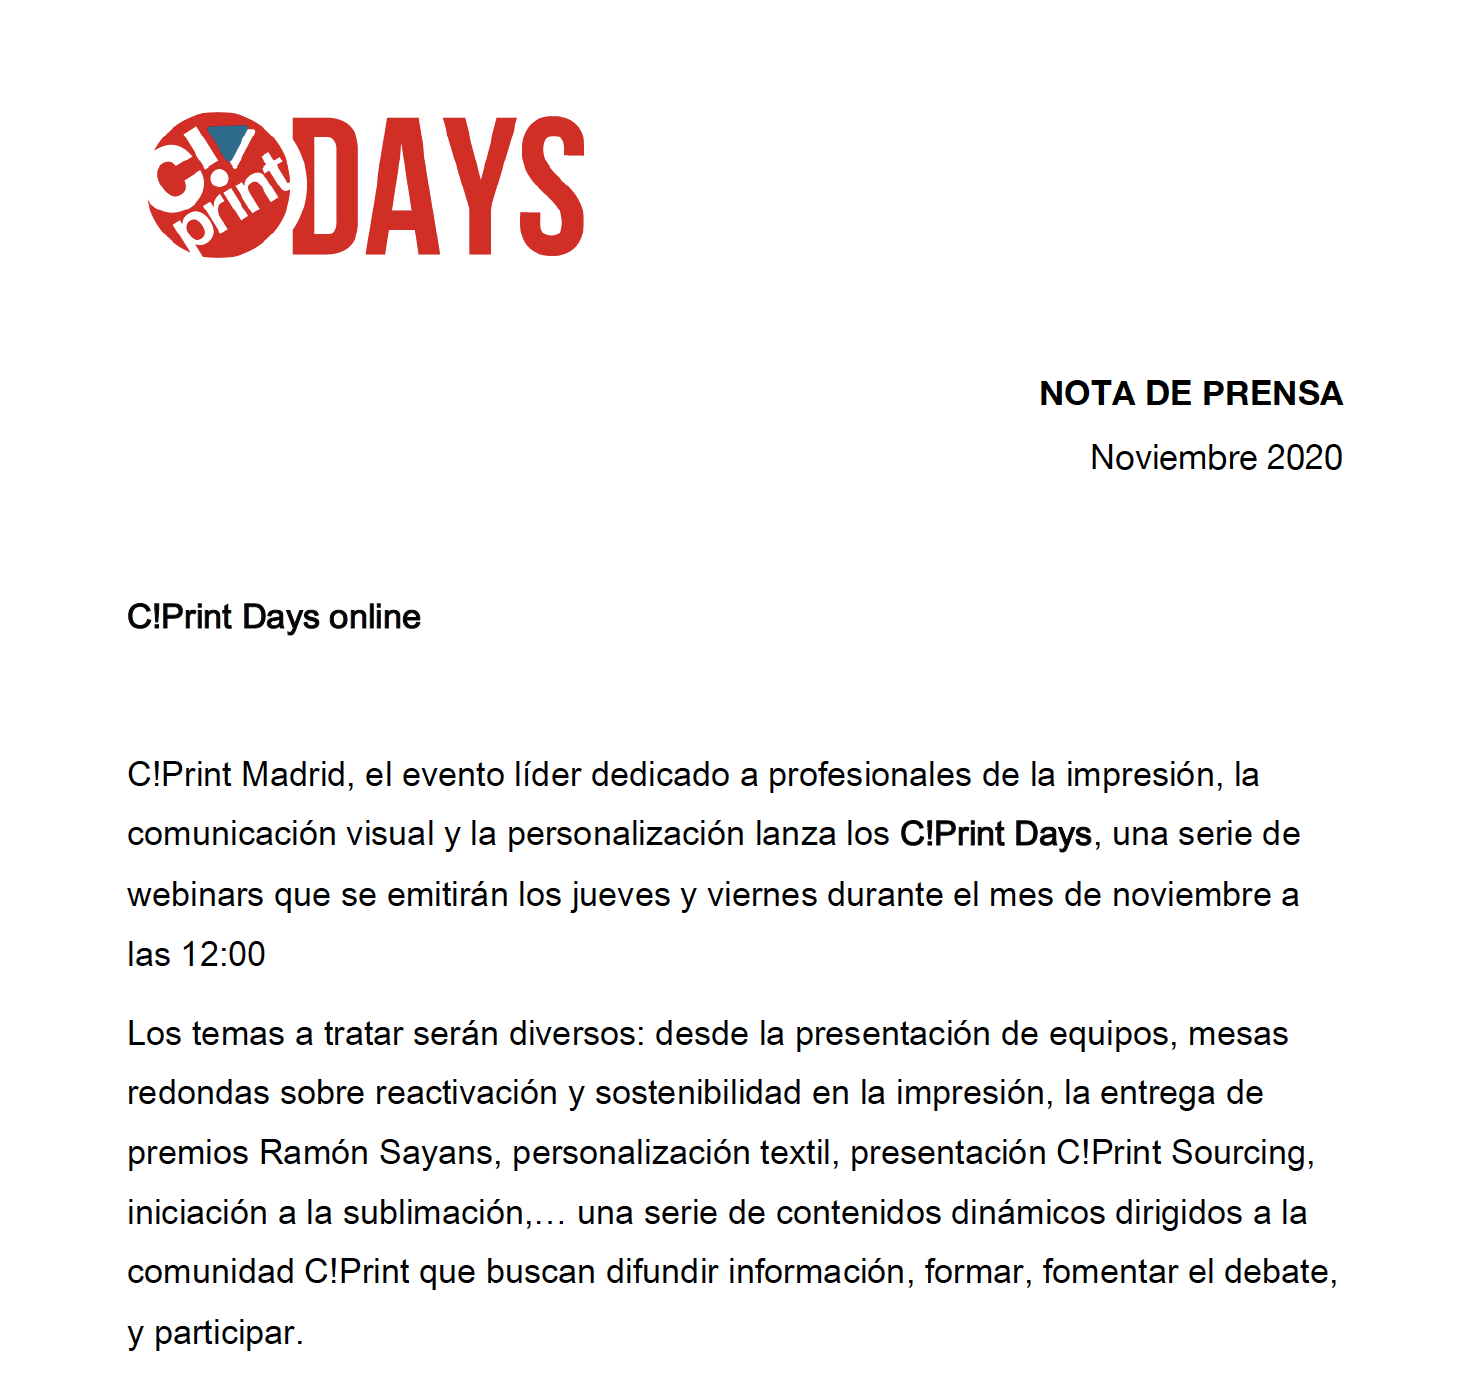 nota de prensa_Cprint Days